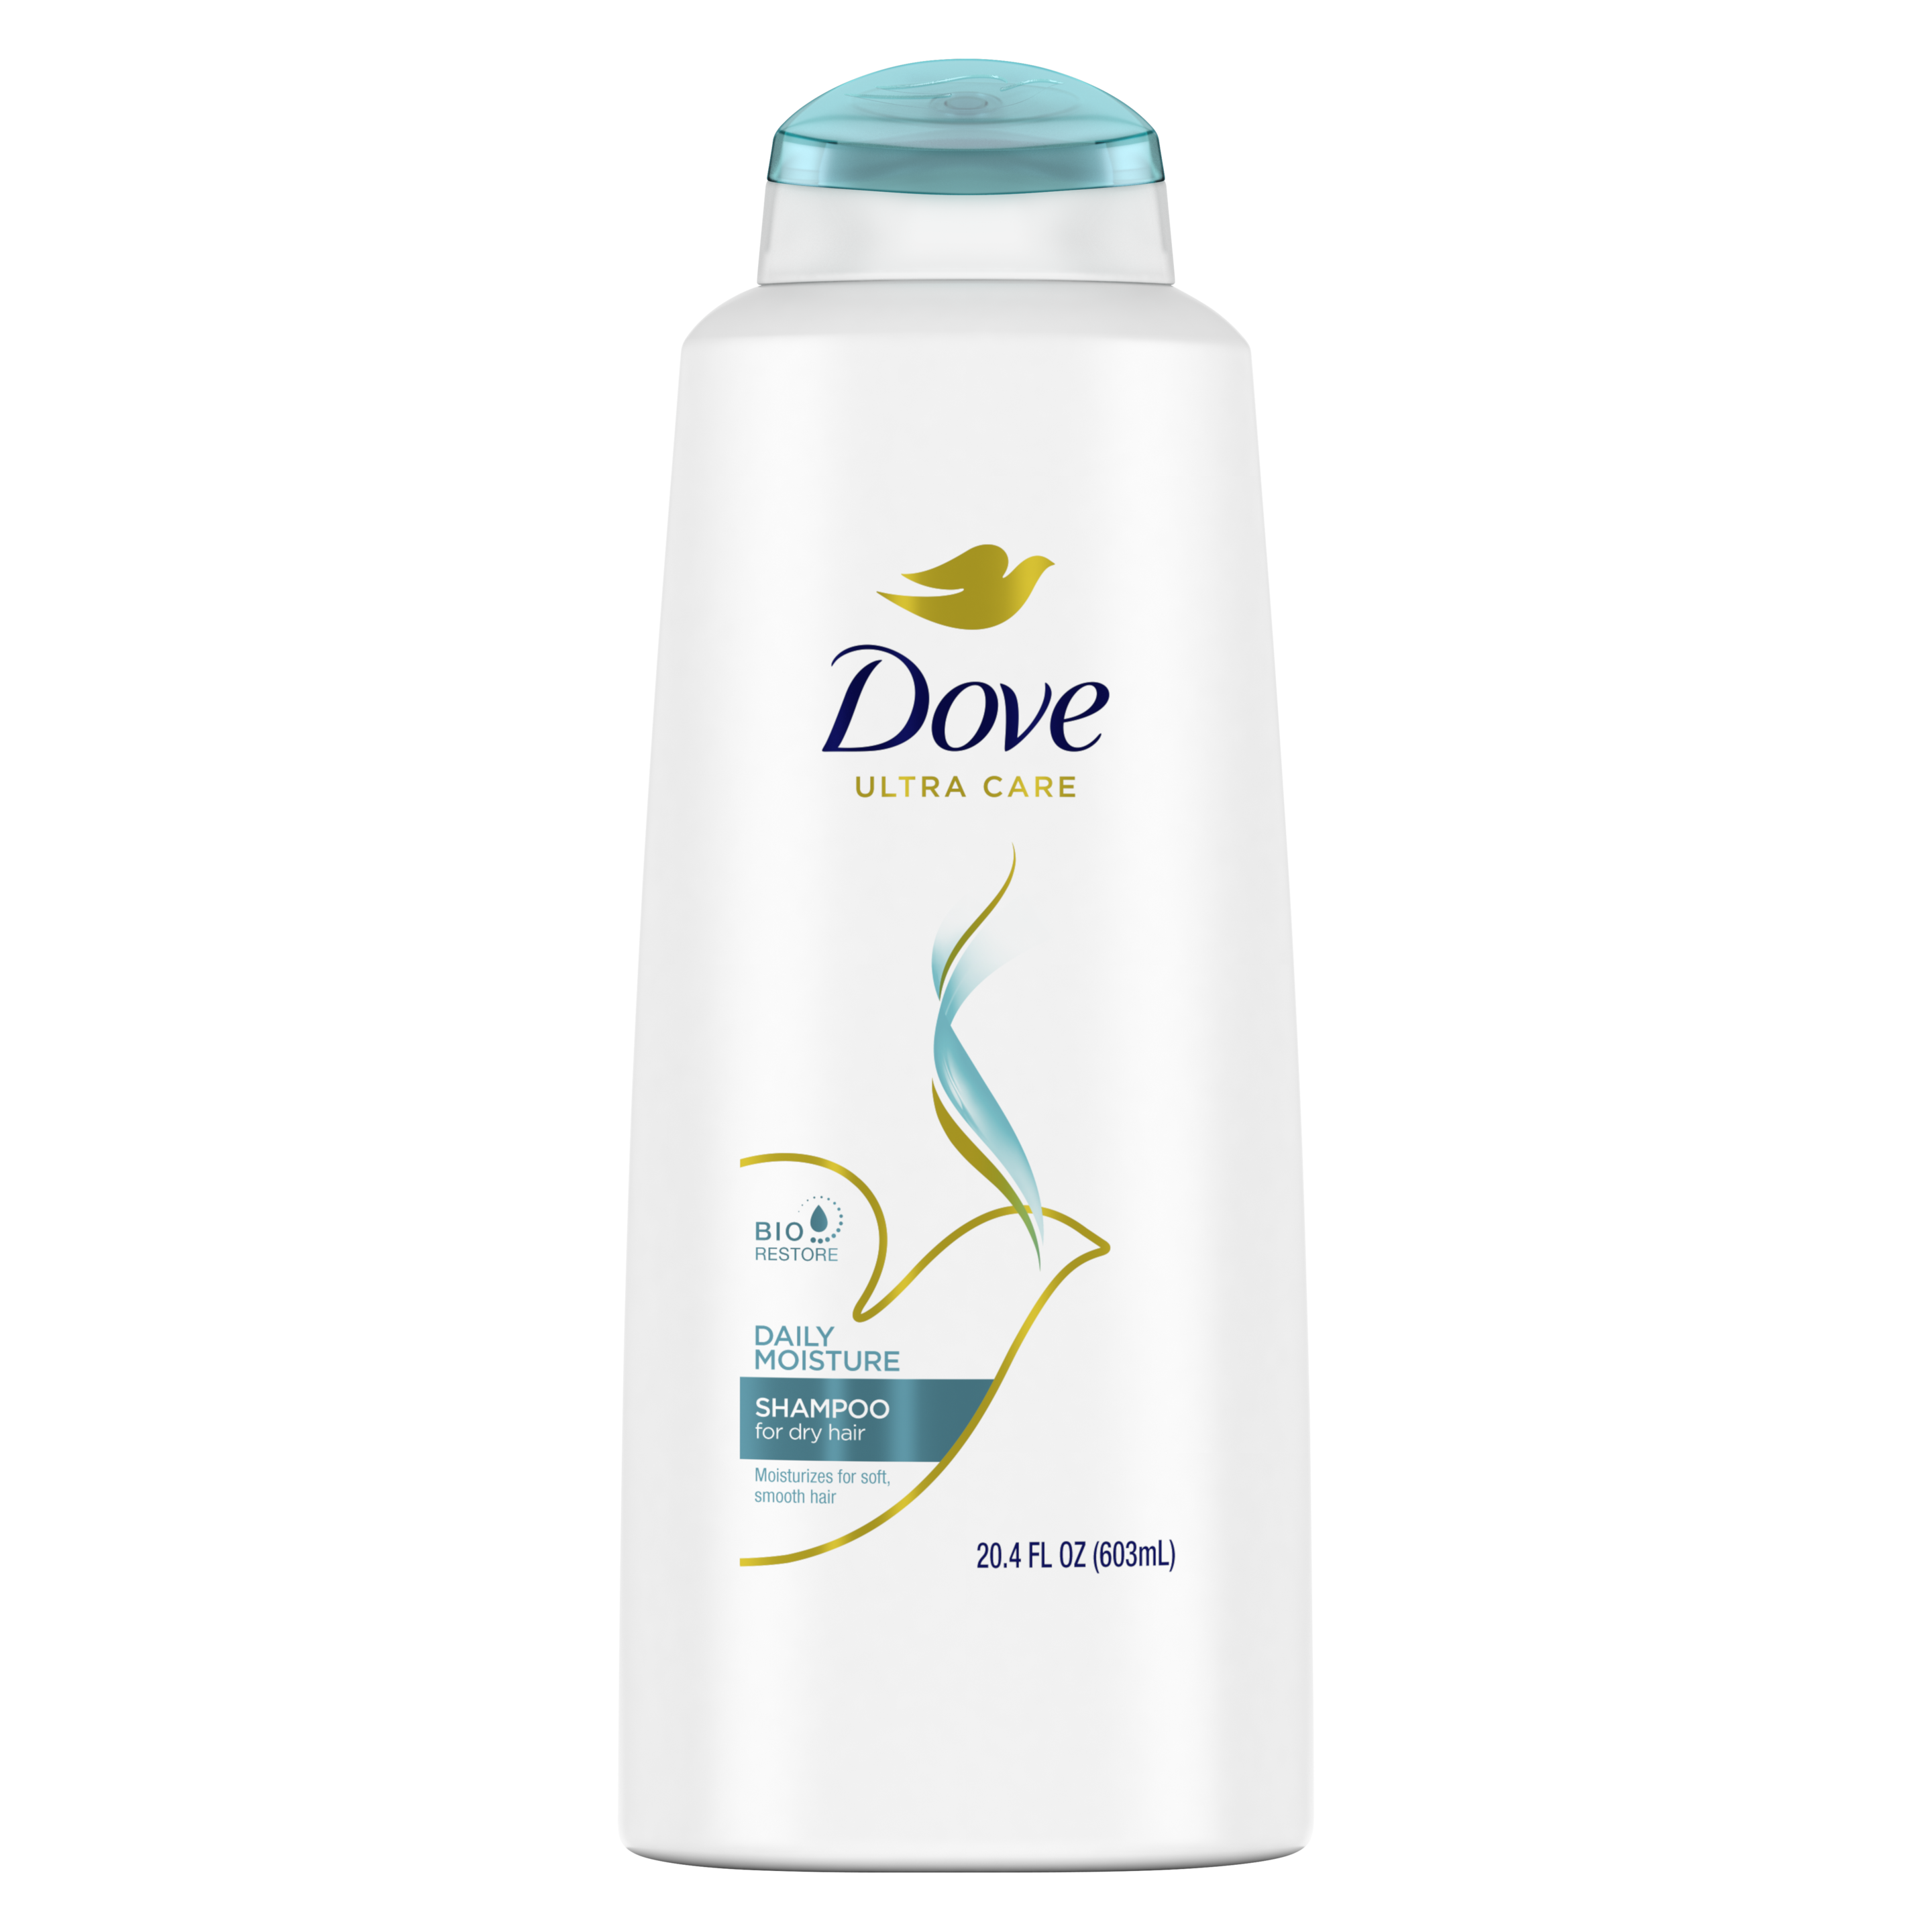 Dove Shampoo Daily Moisture 20.4oz